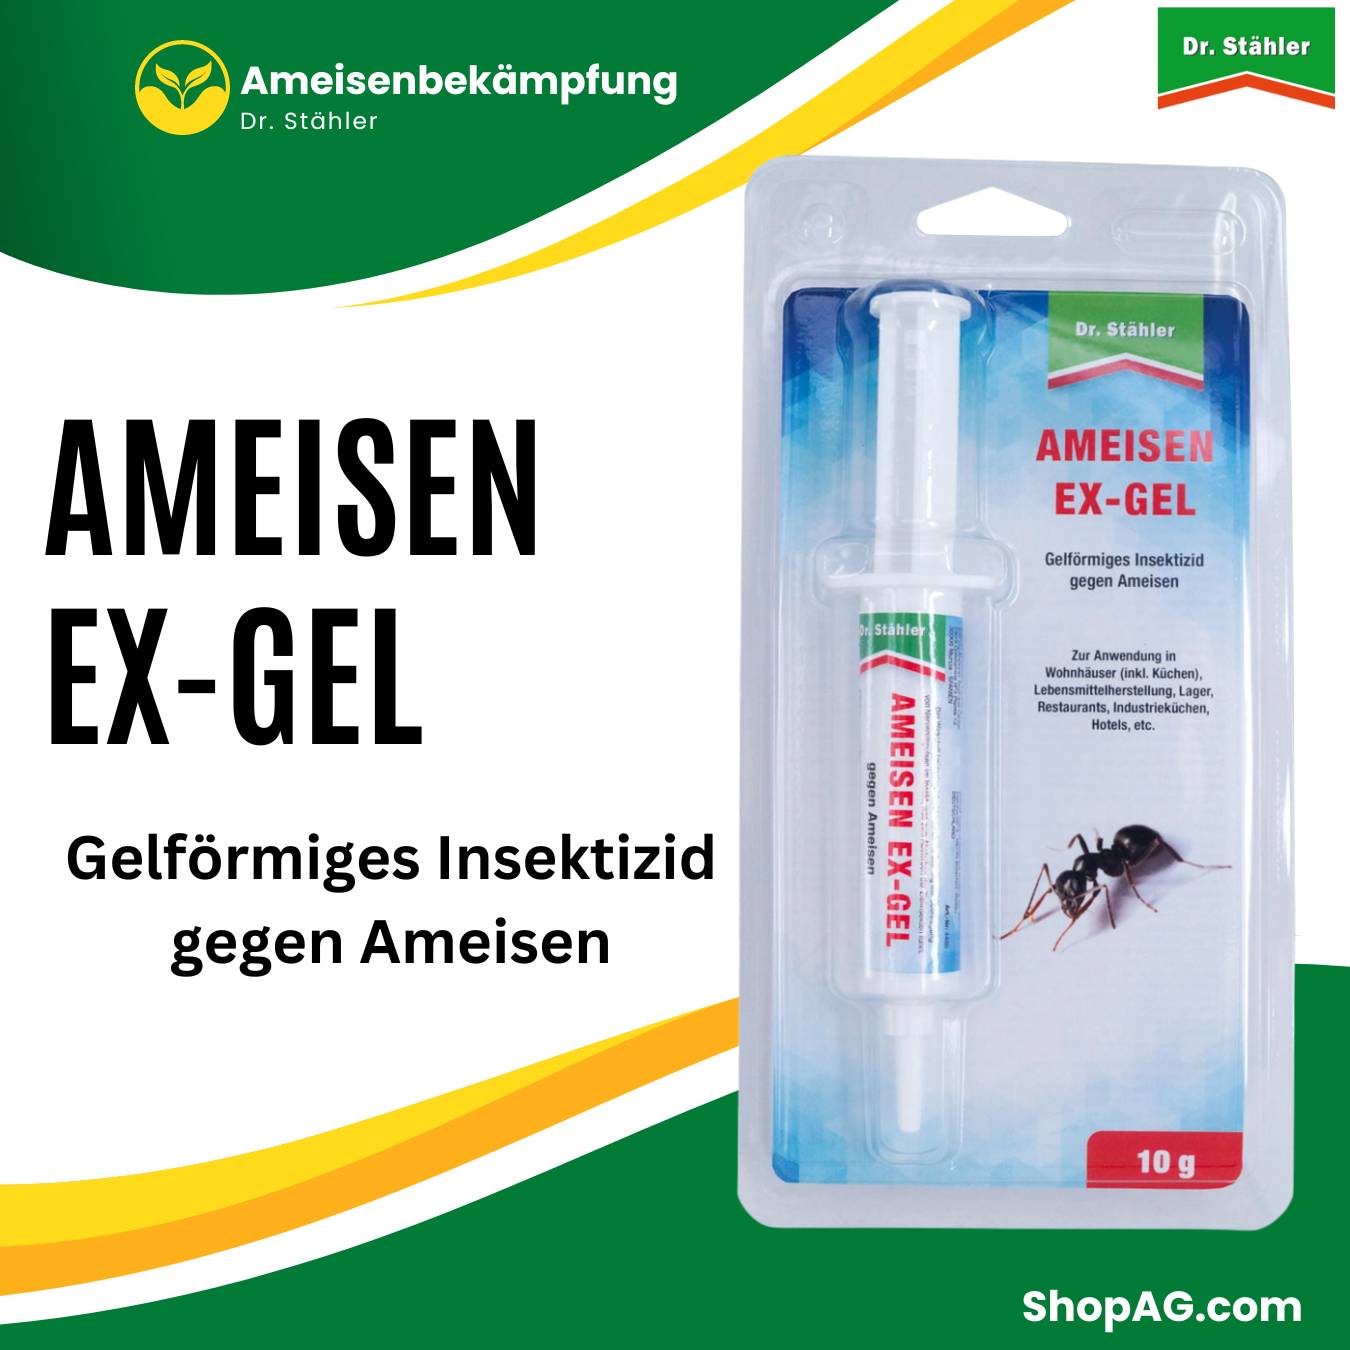 Ameisen Ex Gel 10 g Dr. Stähler